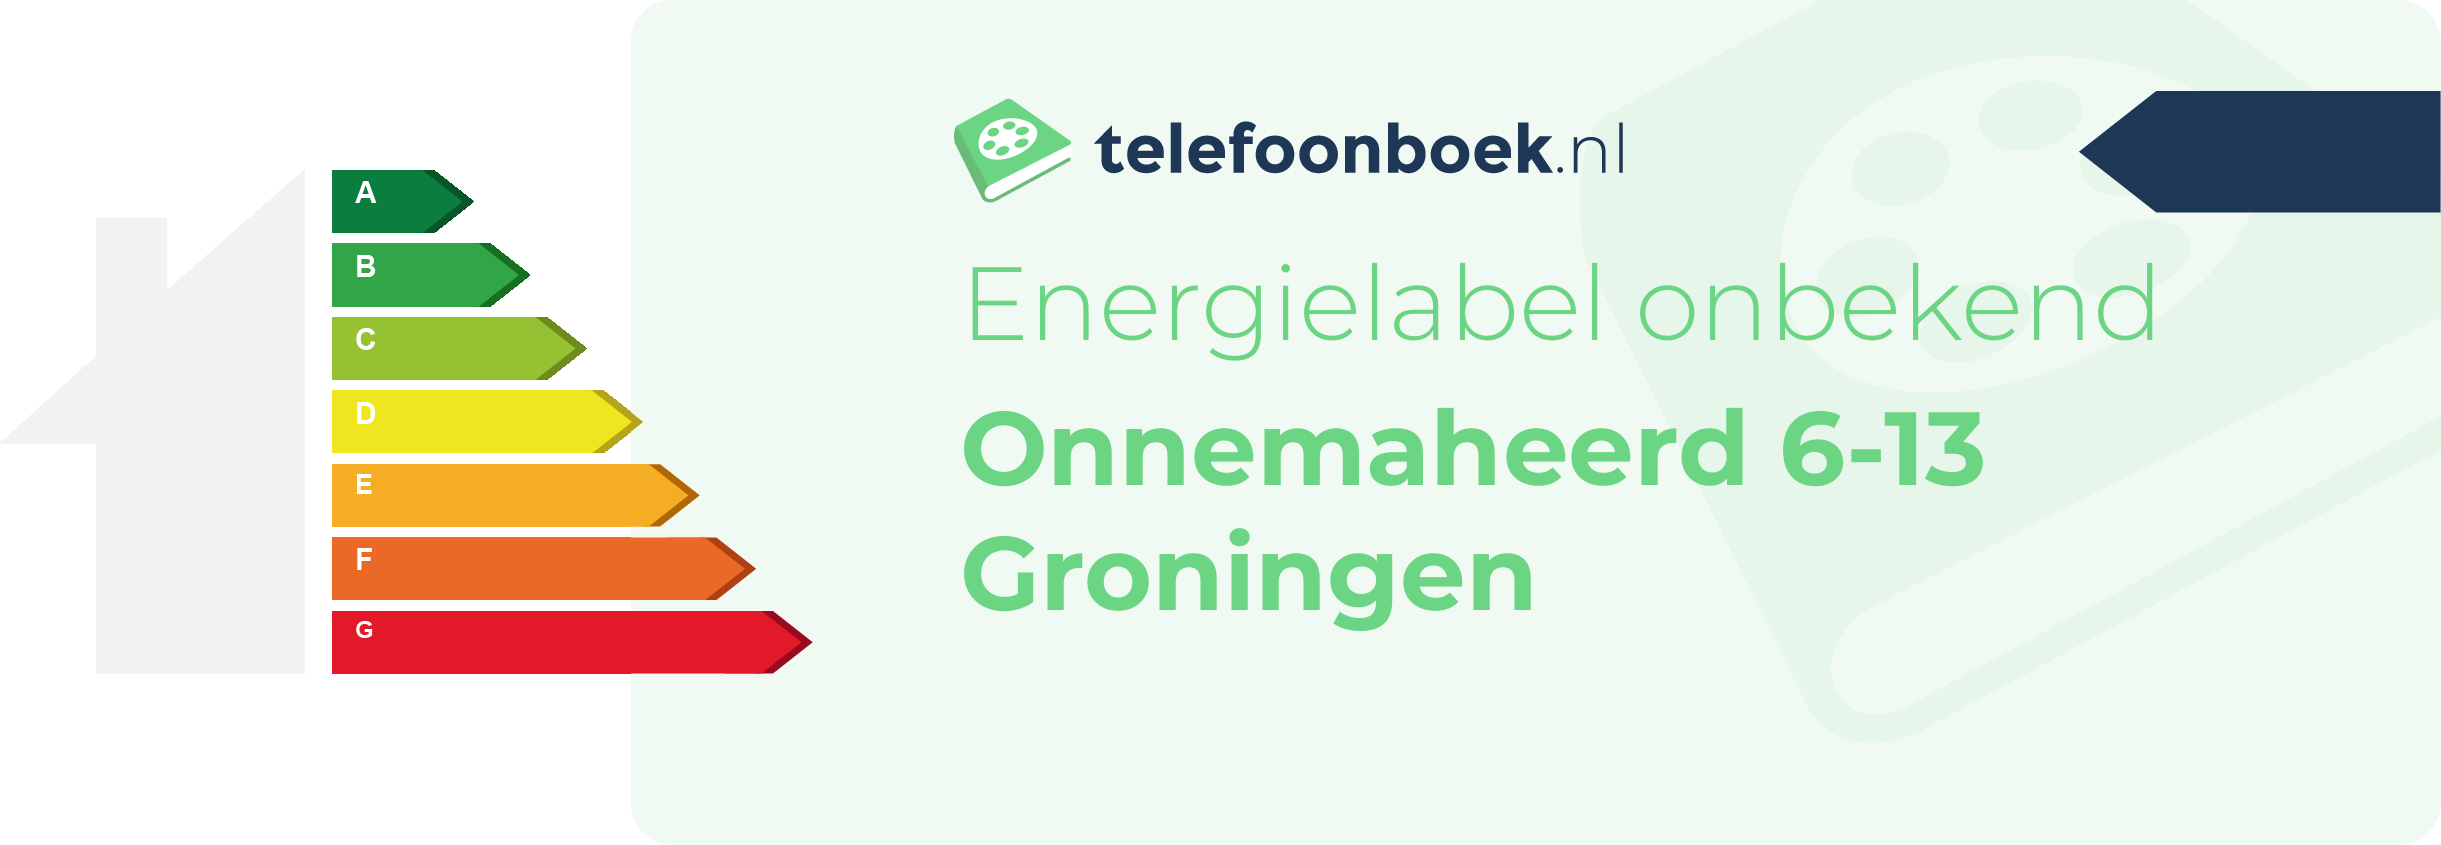 Energielabel Onnemaheerd 6-13 Groningen